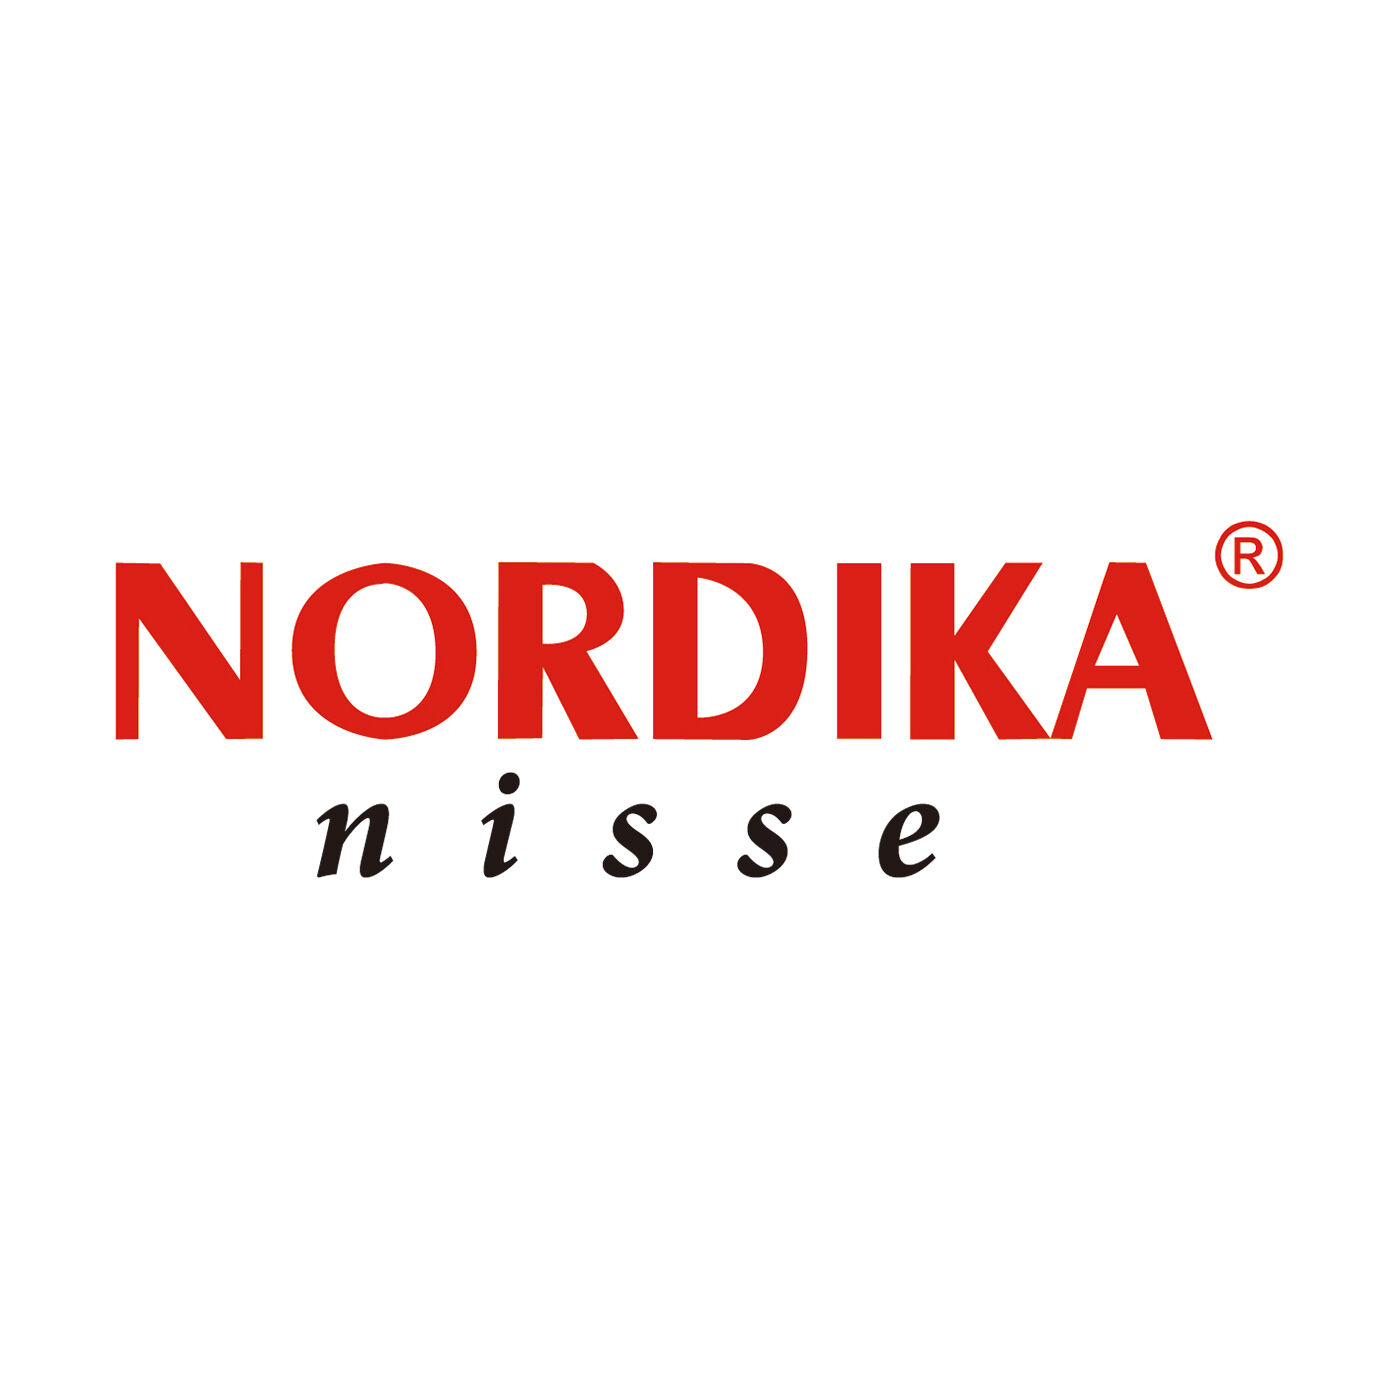 SeeMONO|ヨーロッパの職人が手作りした北欧の妖精〈ベンチ〉／ノルディカニッセ|NORDIKA nisse（ノルディカニッセ）は、Nordika Design（ノルディカデザイン社）が手掛けるハンドメイドの木製人形ブランドです。デンマークの妖精"ニッセ"をモチーフにした人形をつくり、世界に幸福を届けています。